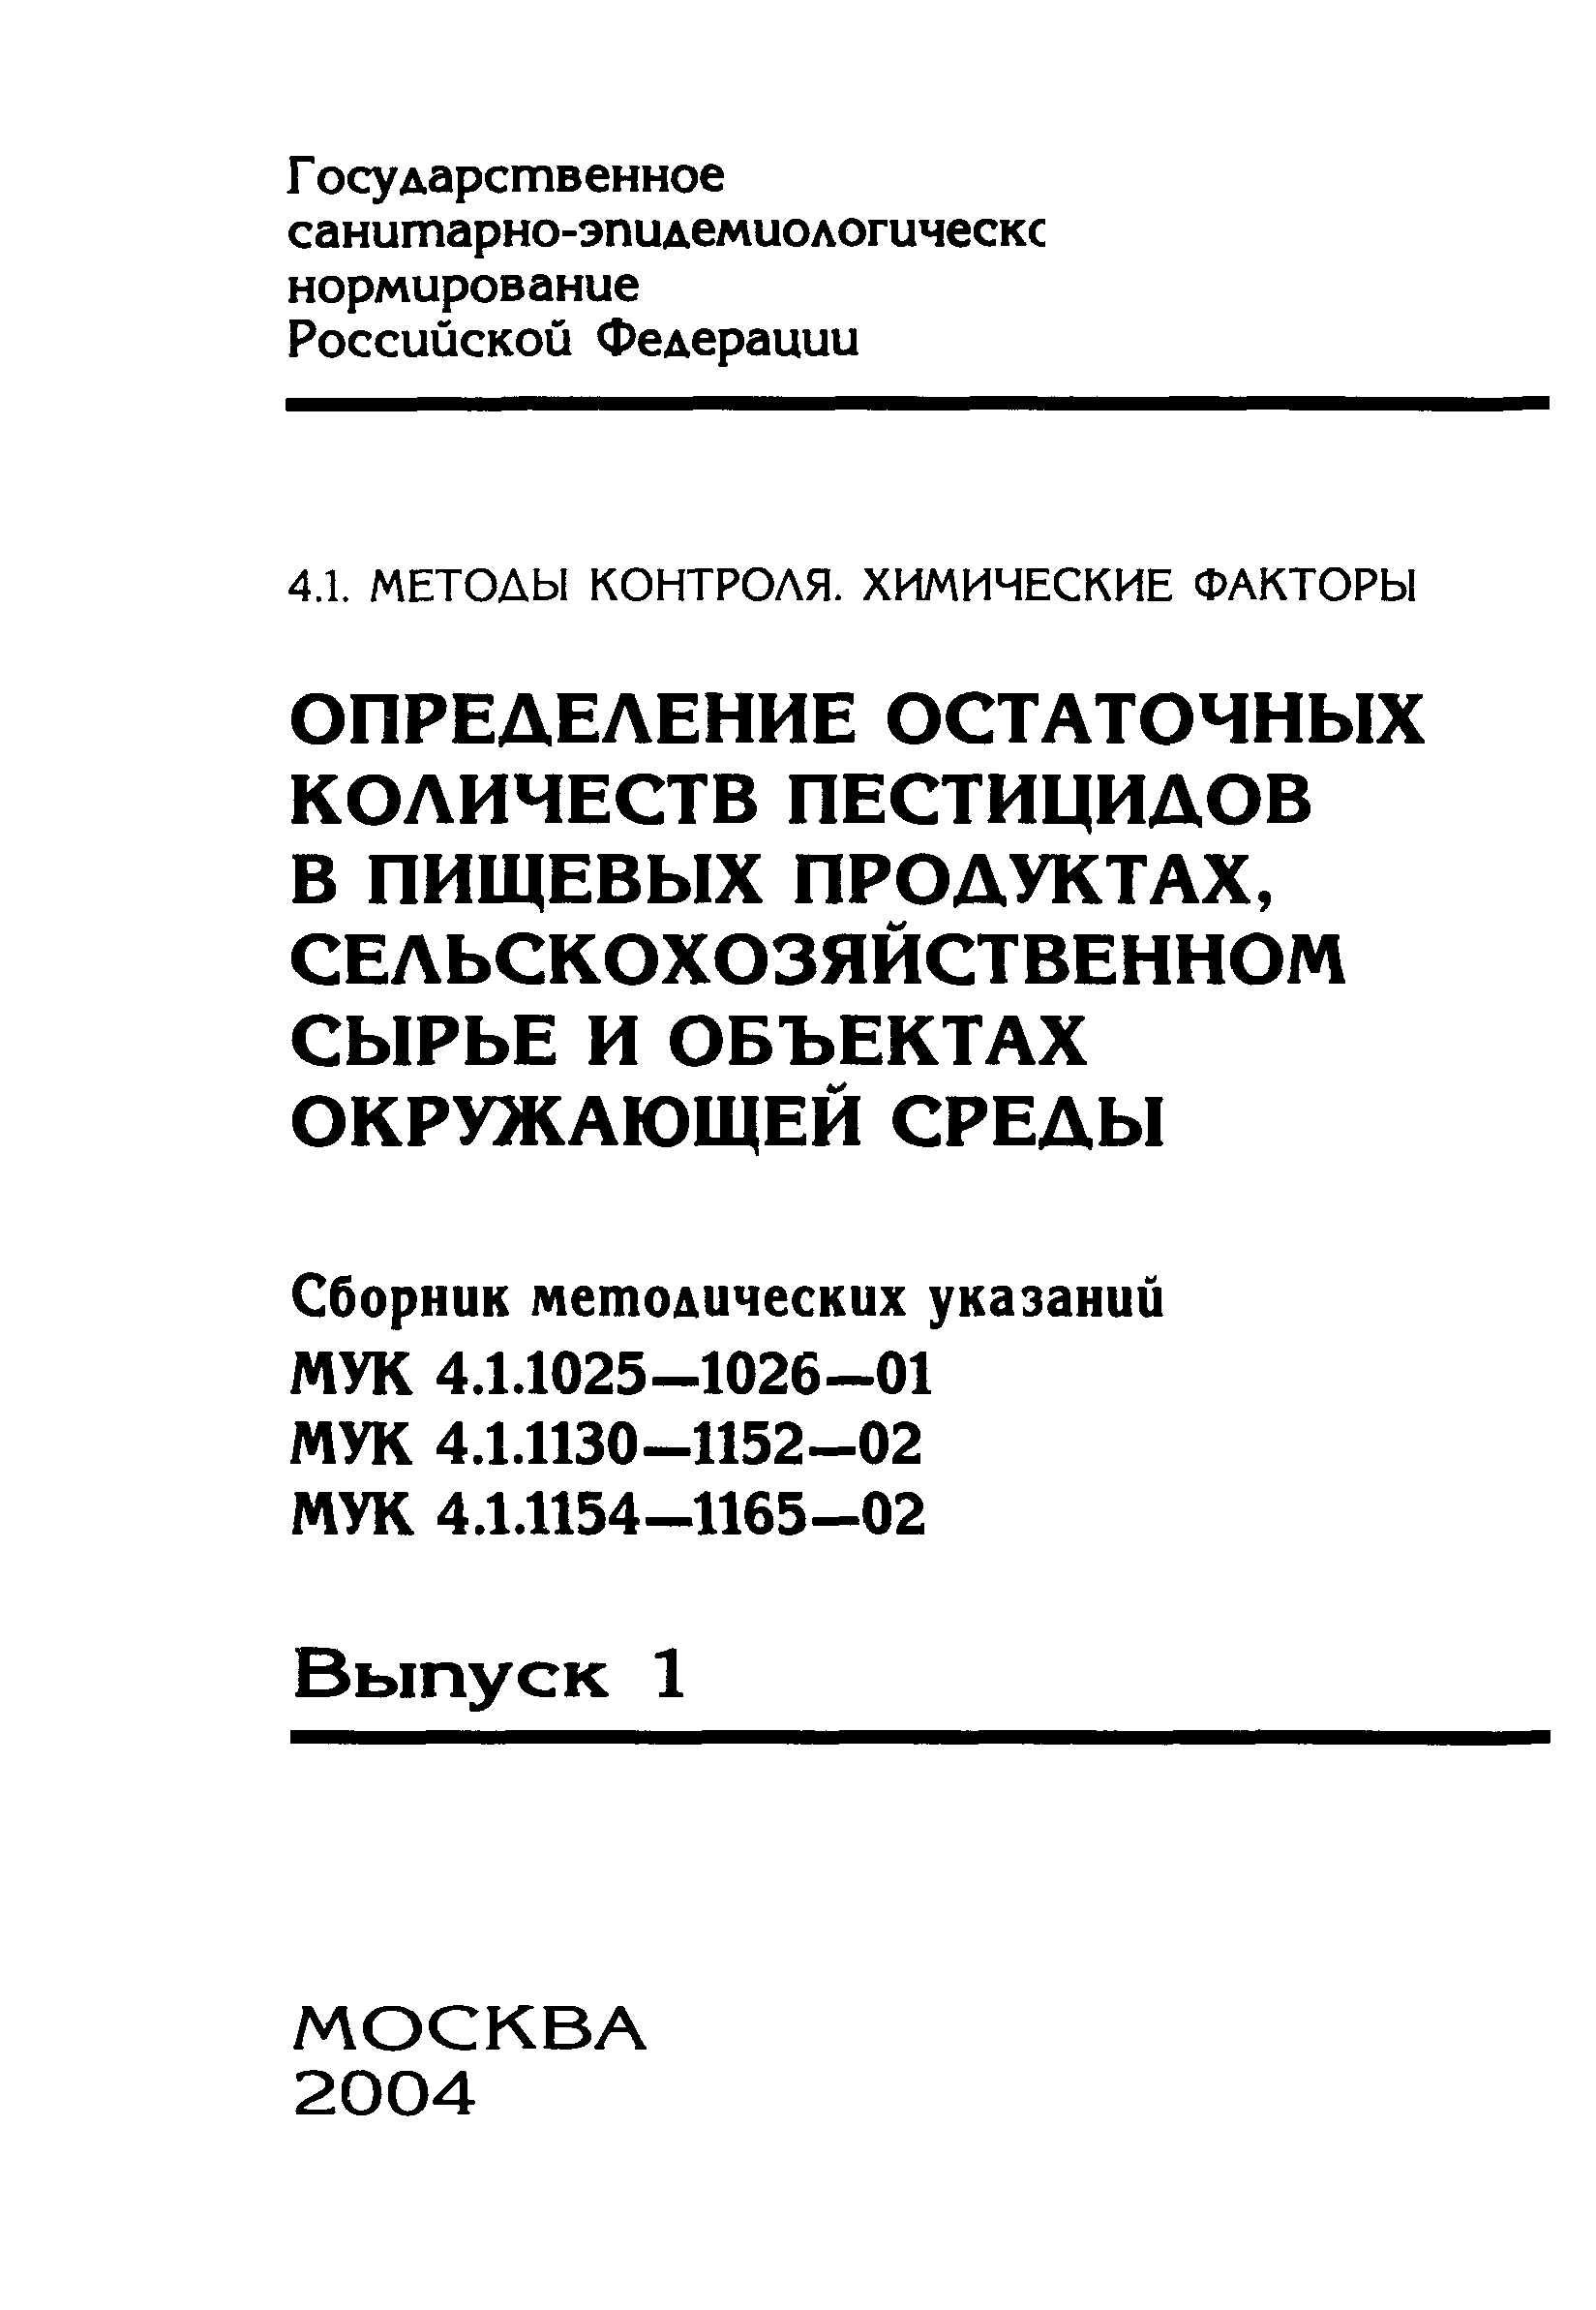 МУК 4.1.1141-02